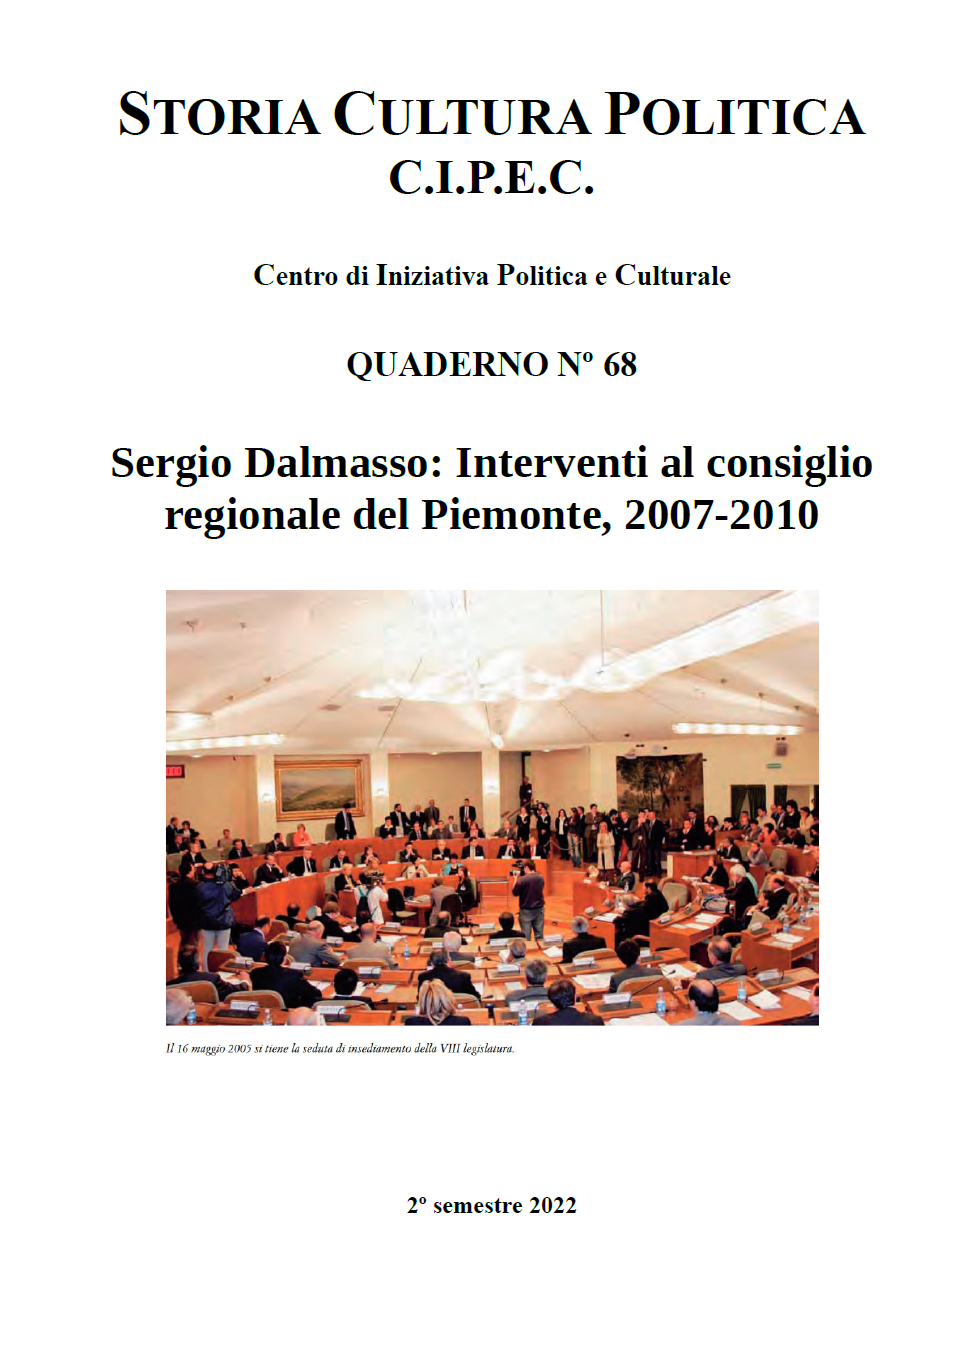 Quaderno Interventi Dalmasso al consiglio regionale del Piemonte parte seconda